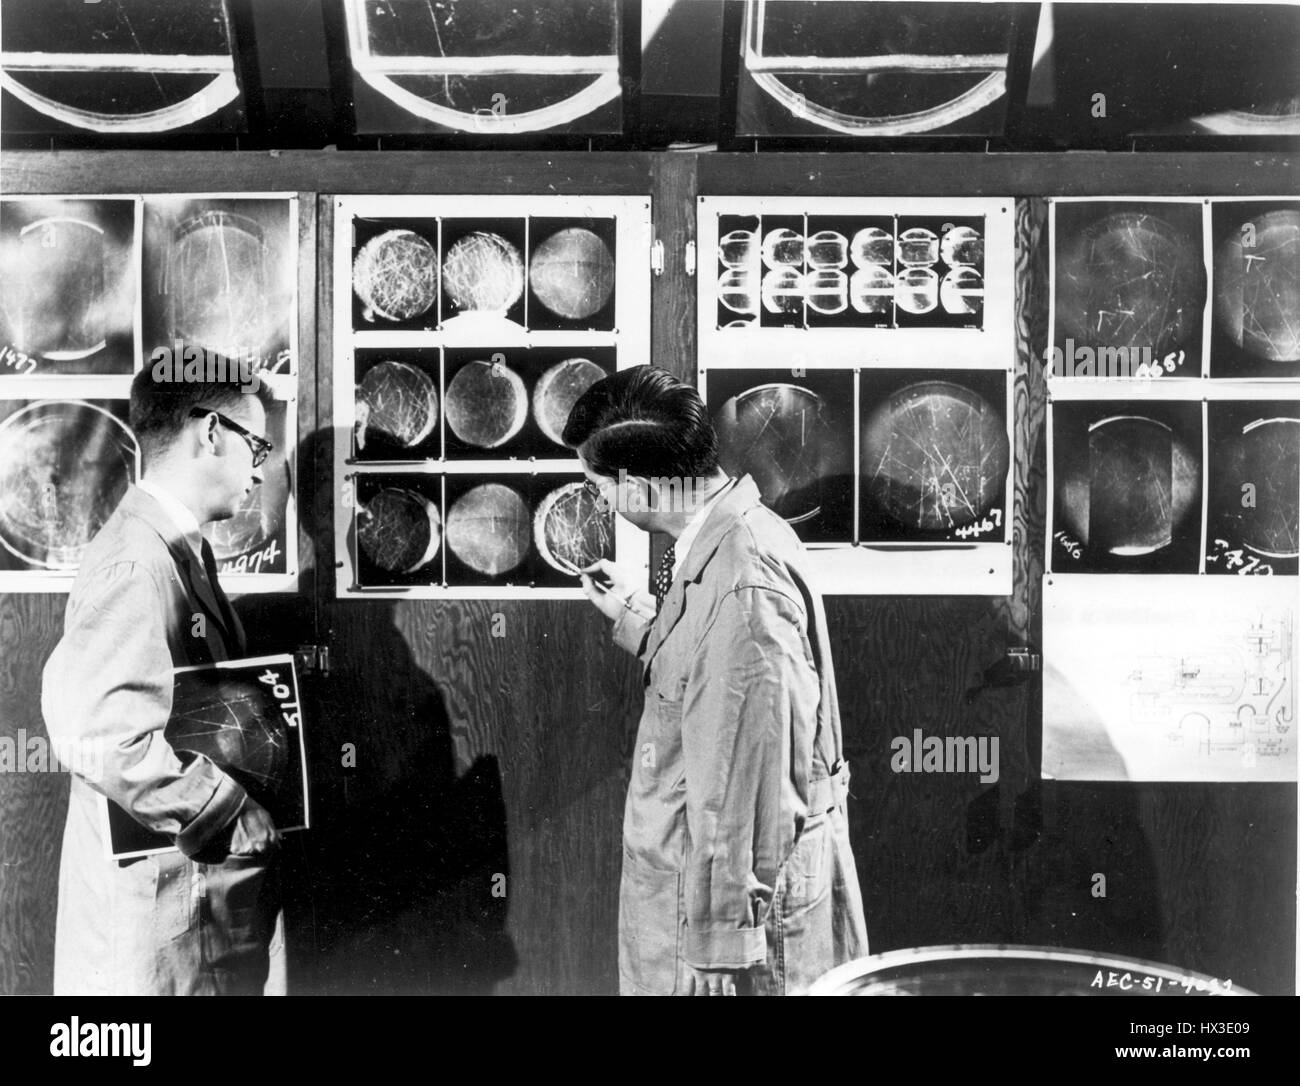 Due fisici con il Brookhaven National Laboratory esaminare il cloud chamber photos, Upton, New York, 1951. Immagine cortesia del Dipartimento Americano di Energia. Foto Stock